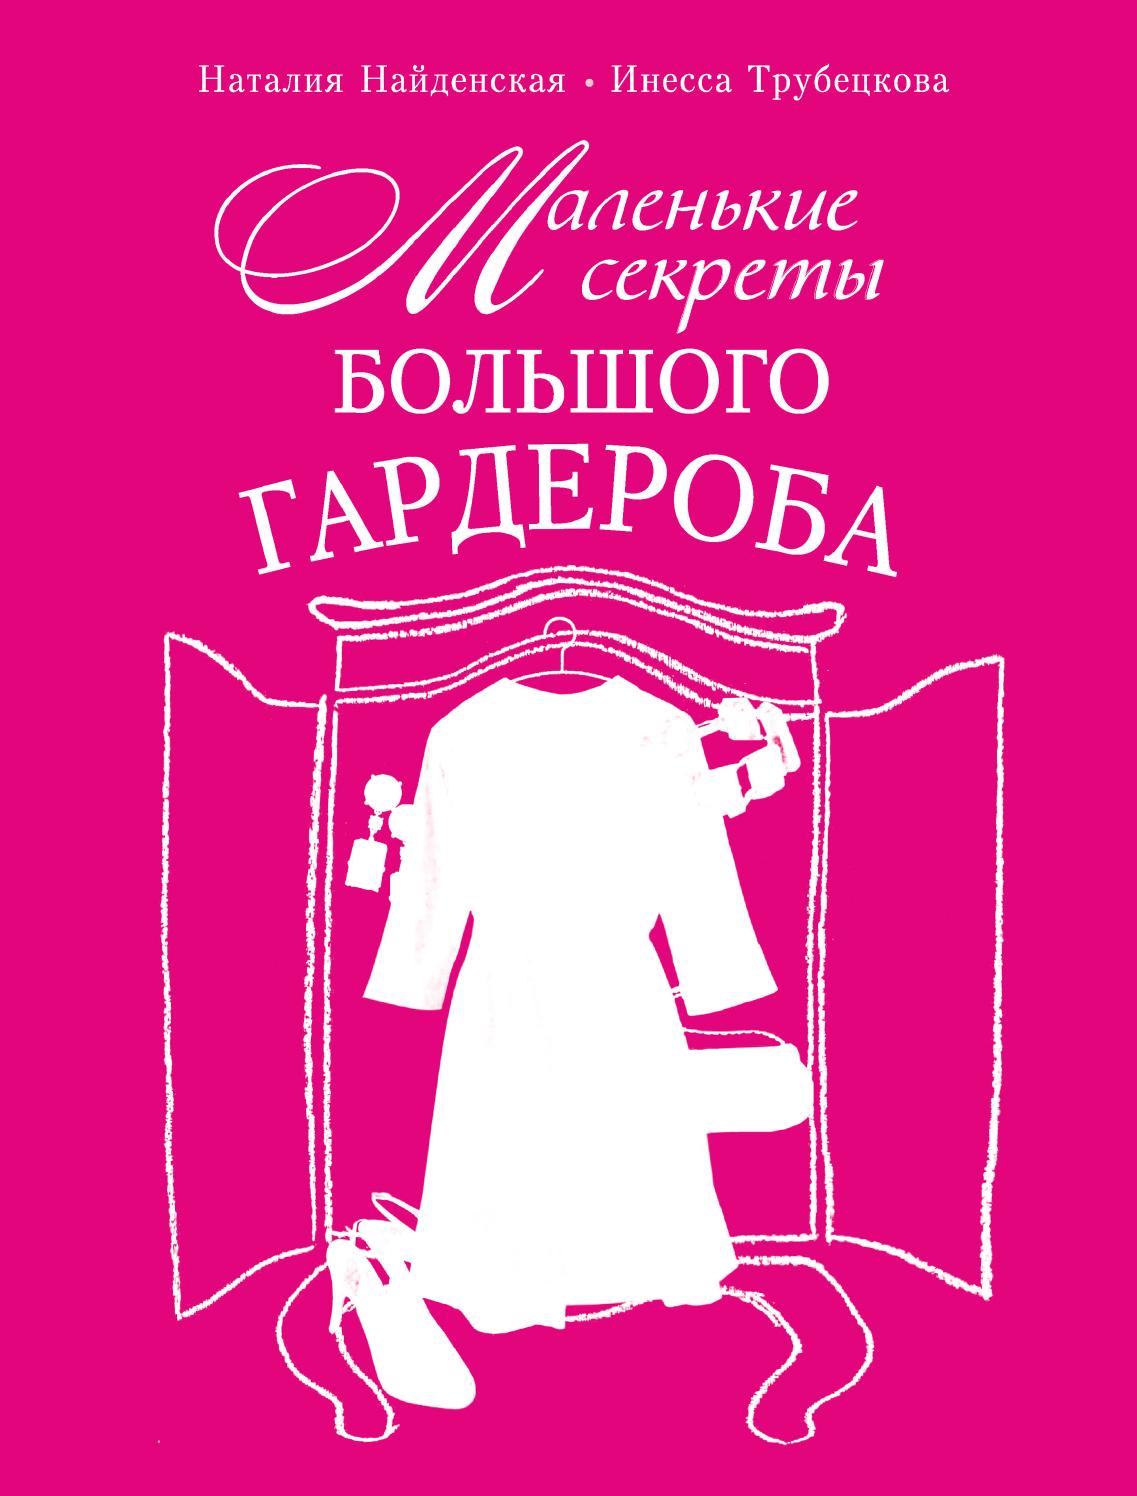 Маленькие секреты большого гардероба, 2013, Наталия Найденская и Инесса Трубецкова